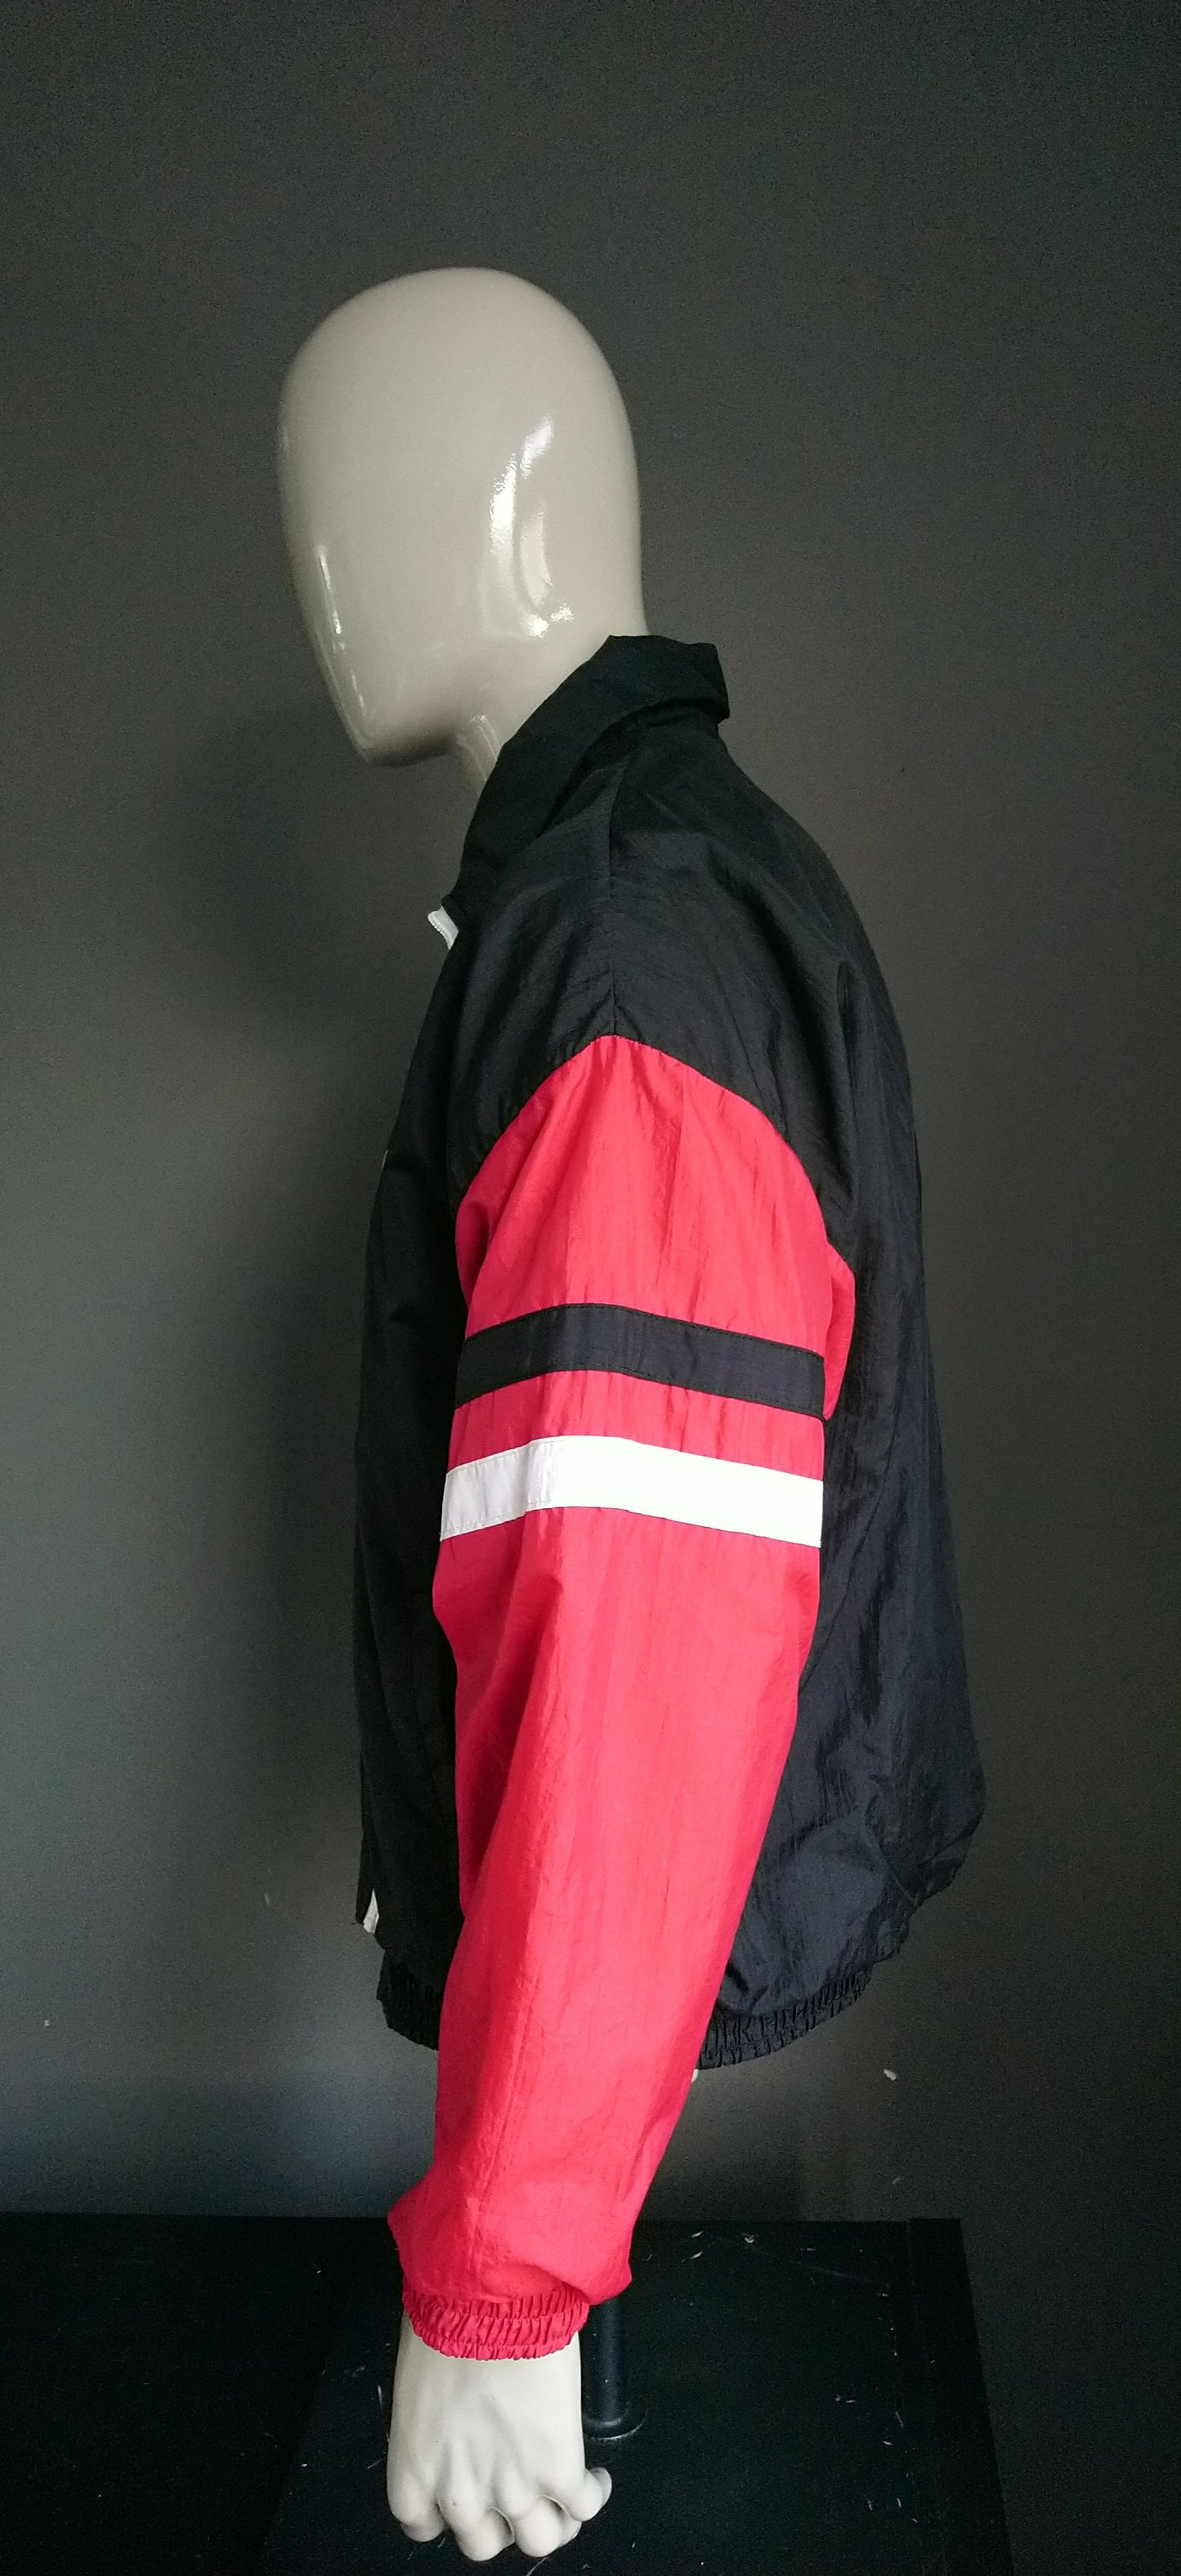 Vintage -Konkurrent 80er bis 90er Sportjacke. Rot Schwarz und Weiß gefärbt. Größe L / XL.